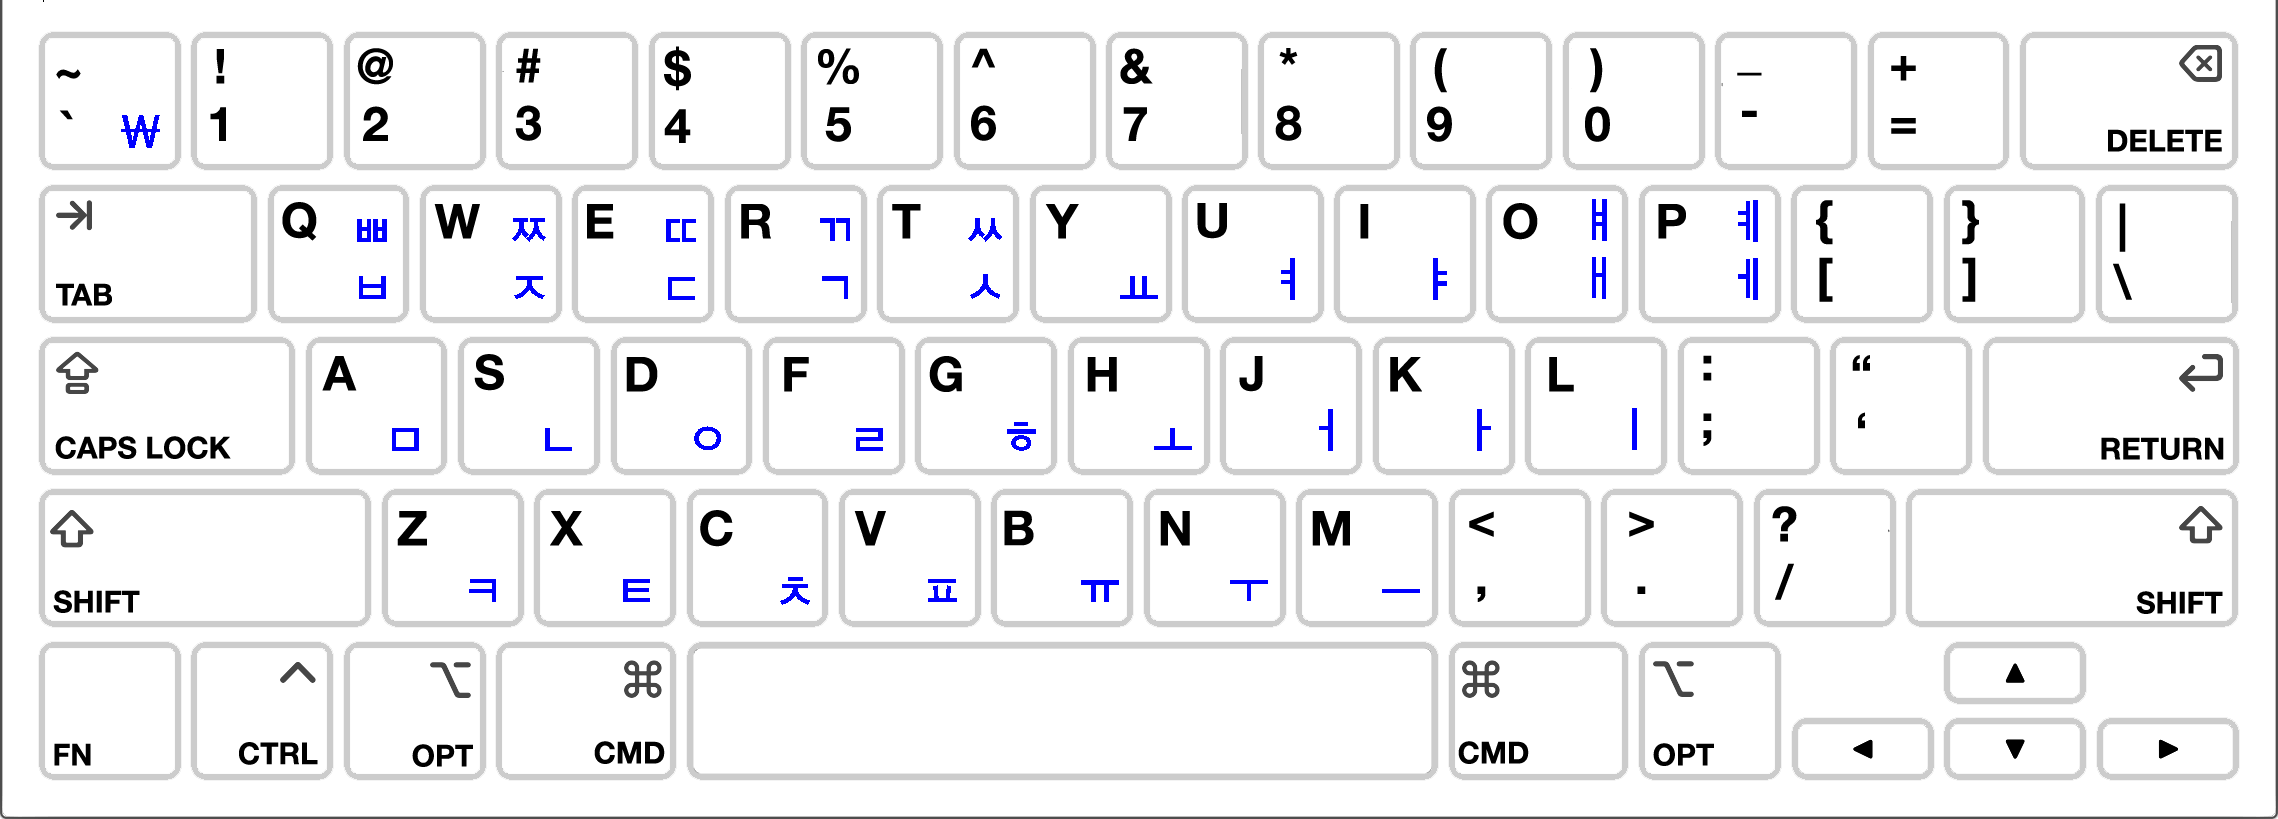 Korean Macintosh Keyboard Layout